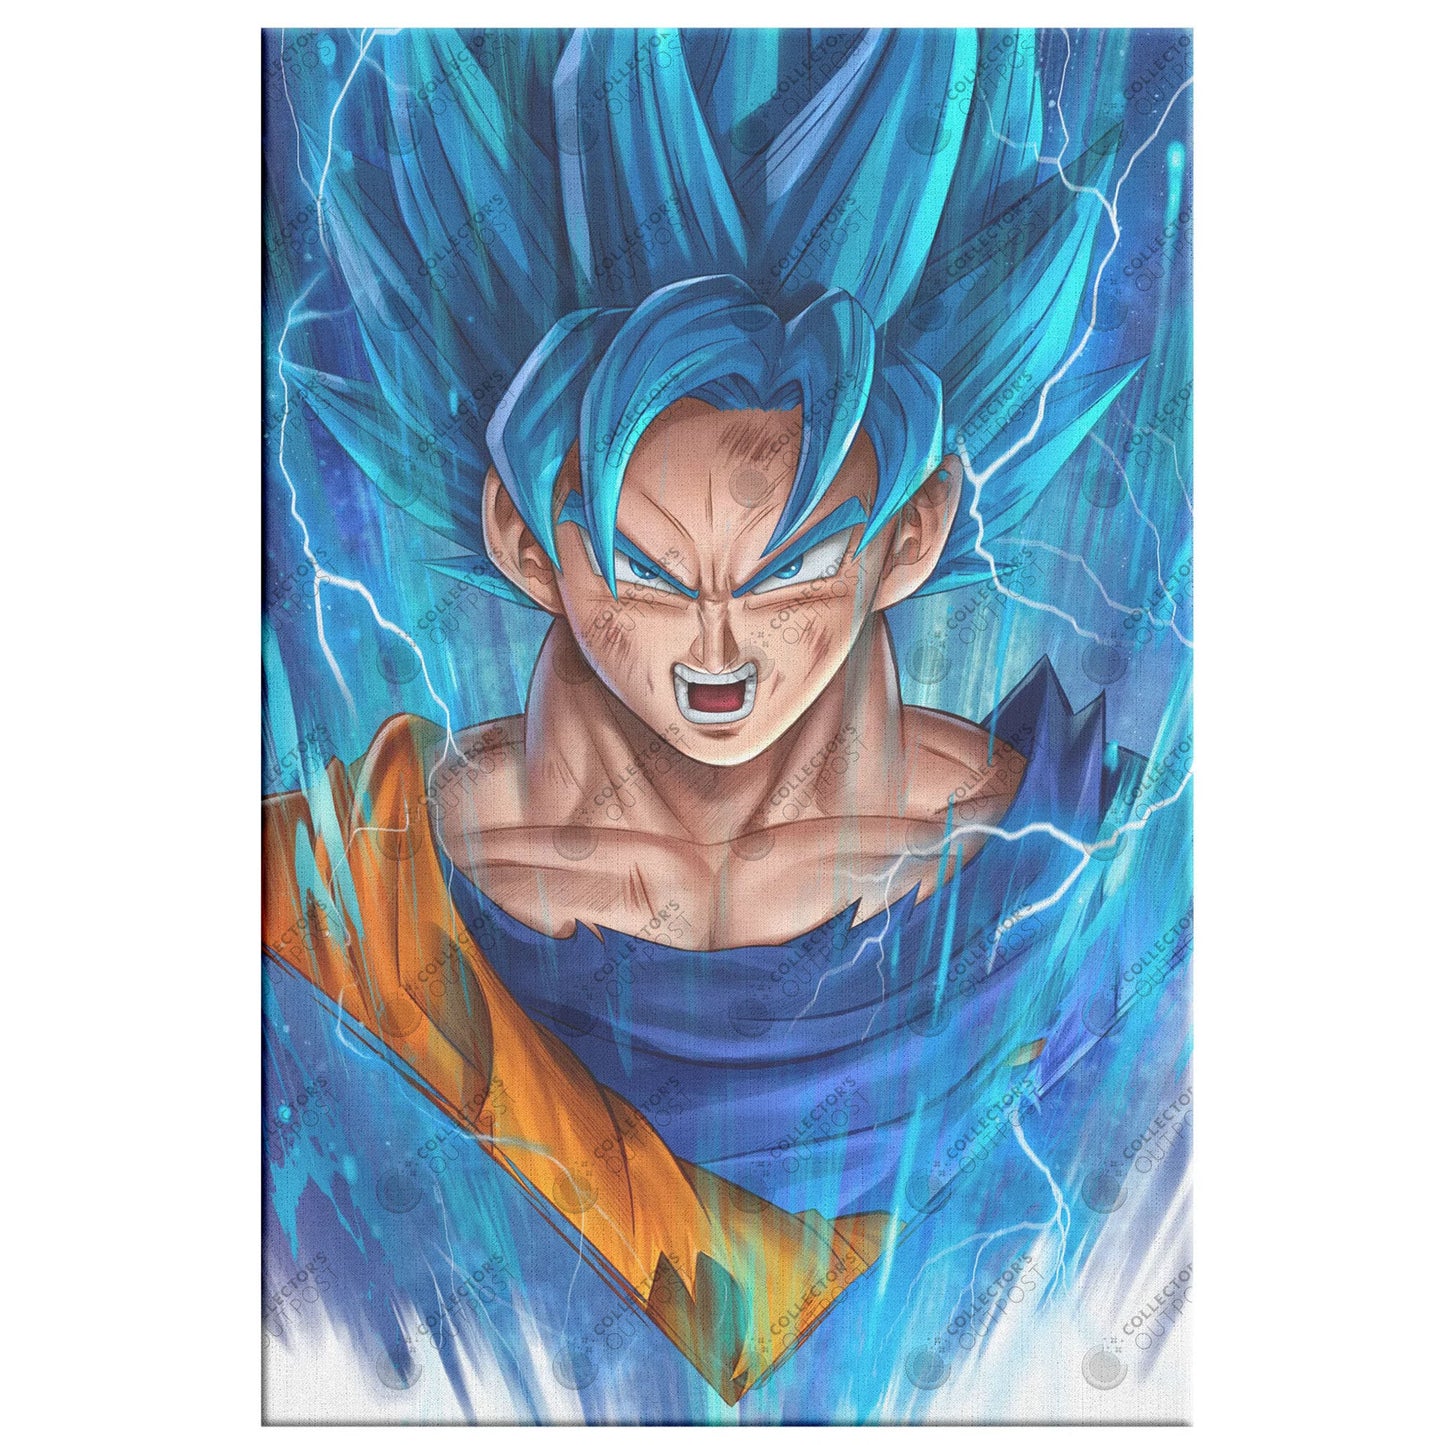 Son Goku "Super Saiyan Blue" Dragon Ball Z Legacy Portrait Art Print